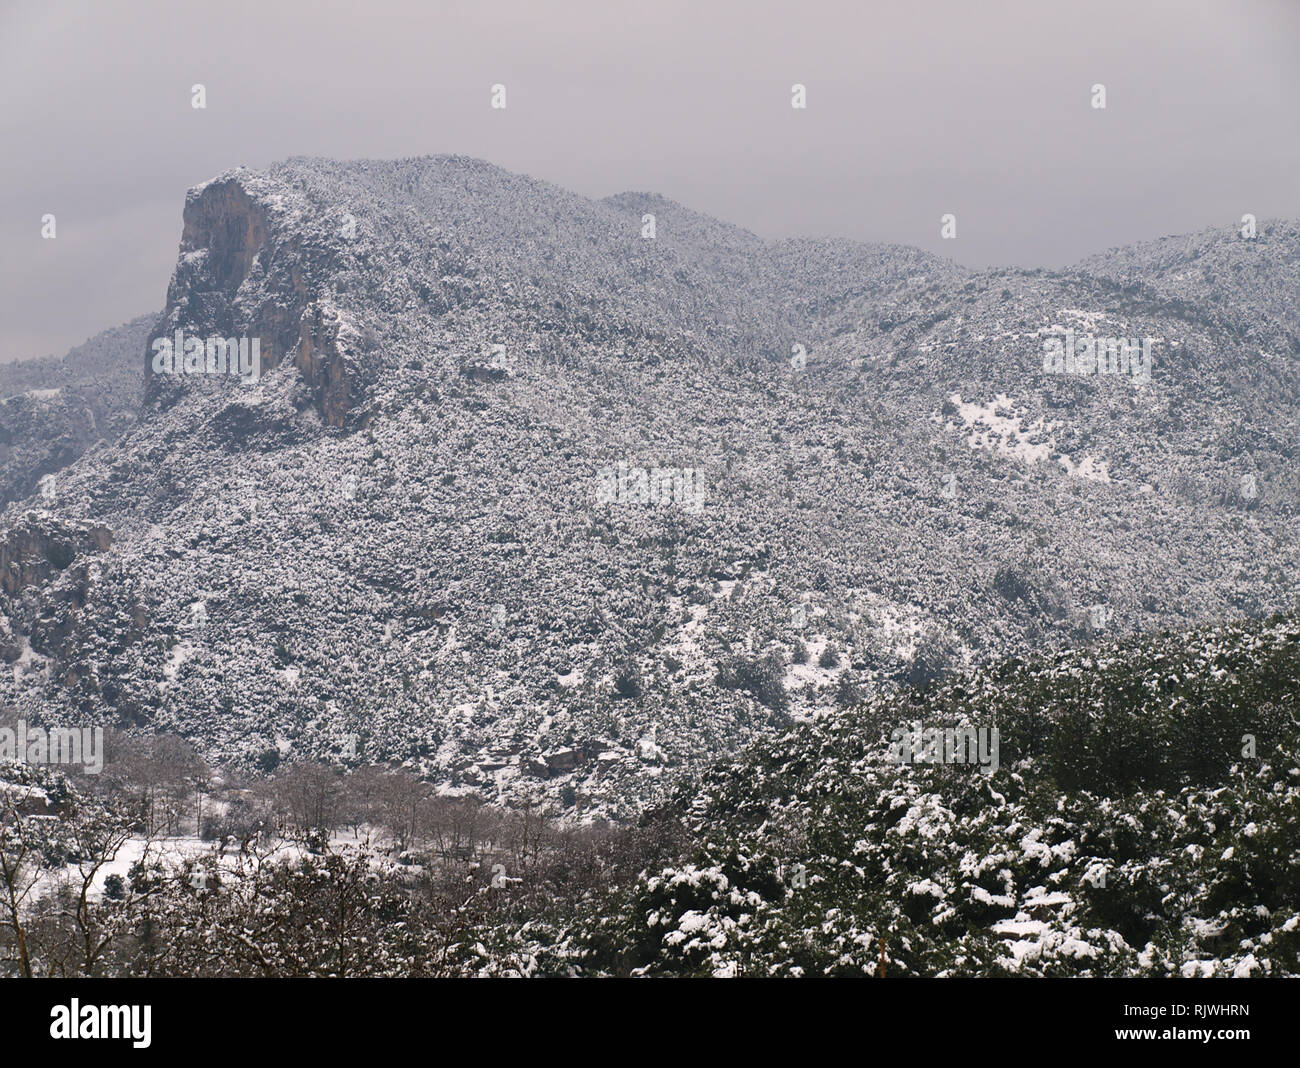 Blick auf den Olymp Berge mit Schnee bedeckt, von Litochoro in Pieria  Griechenland Stockfotografie - Alamy